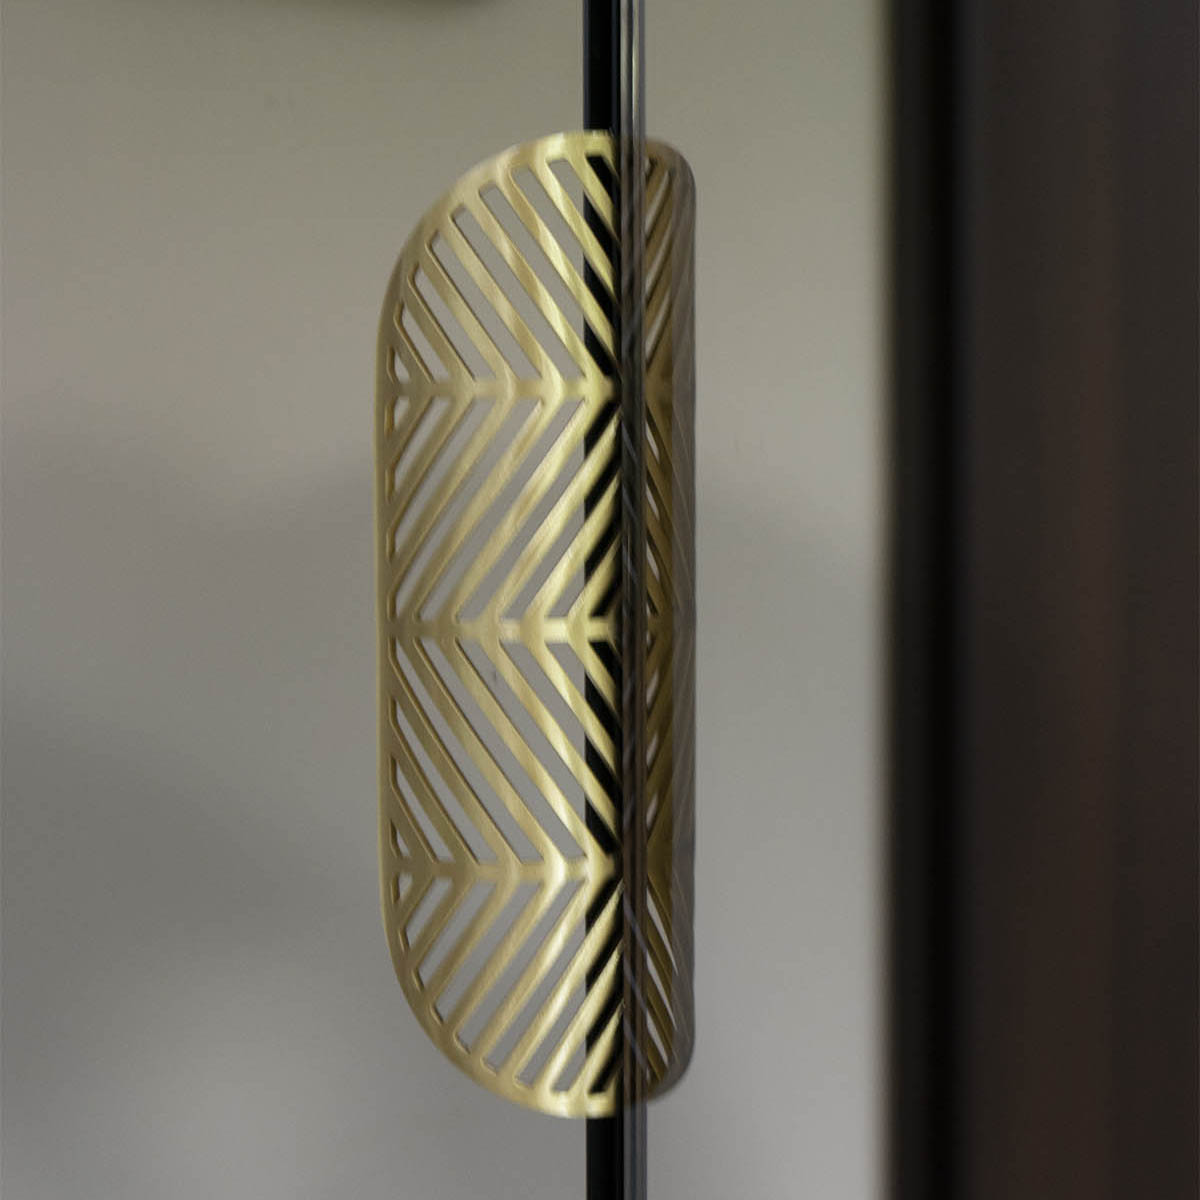 Szafa z drzwiami otwieranymi lustra brązowe, lustrzana szafa - zdjęcie 8